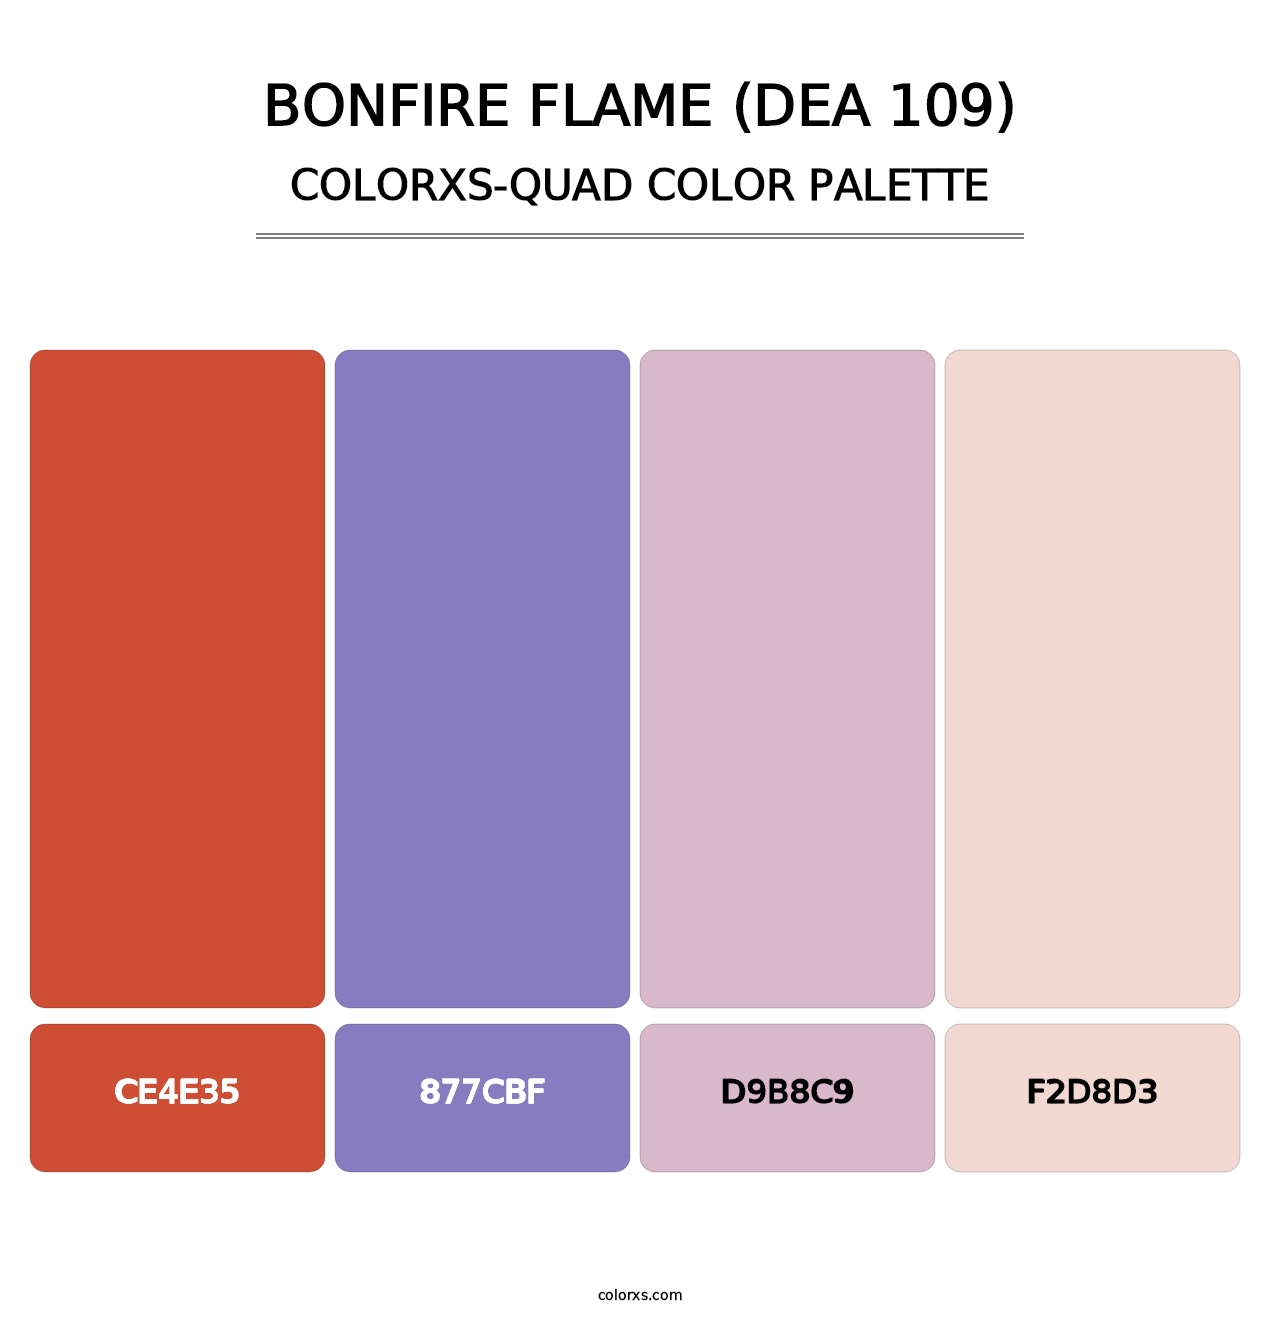 Bonfire Flame (DEA 109) - Colorxs Quad Palette